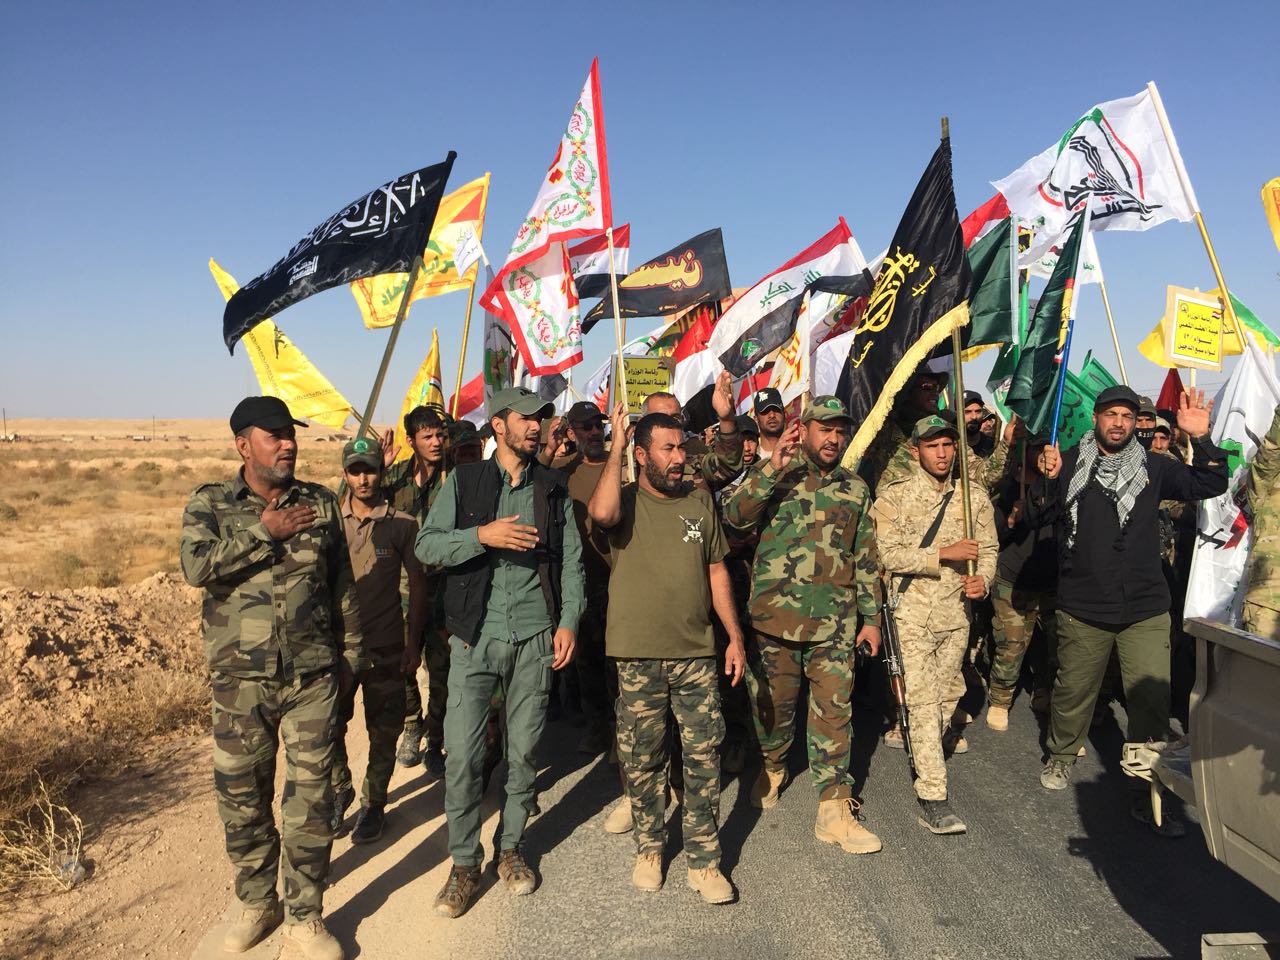 العراق: ميليشيا تلد أخرى و"حزب الله" المايسترو